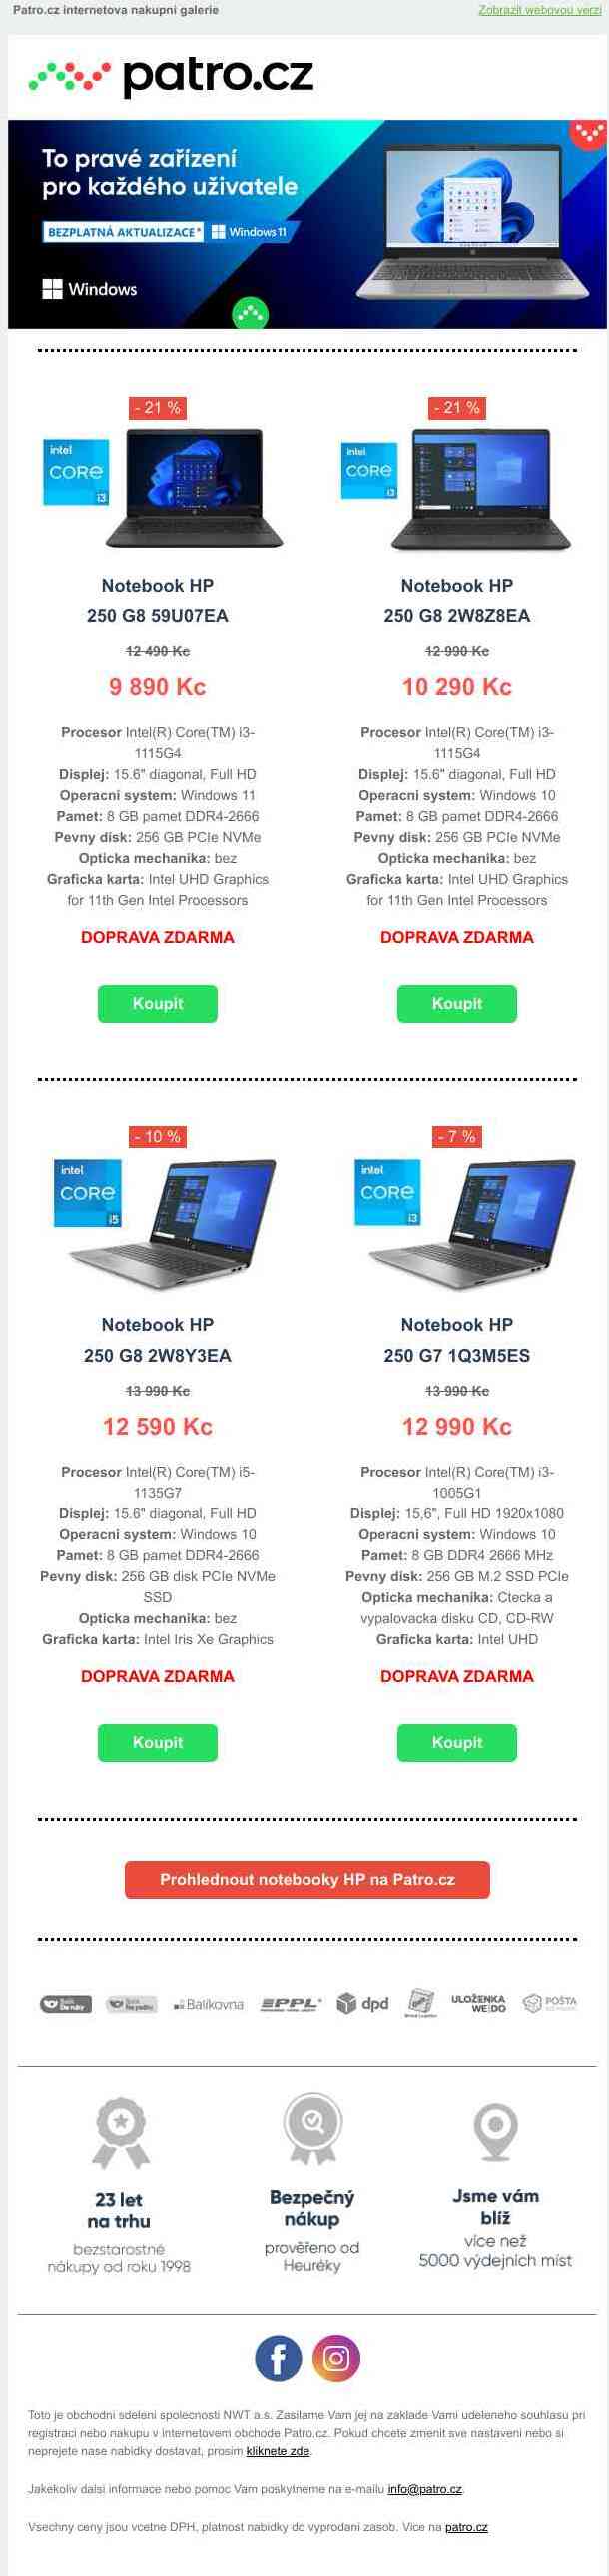 🎉 Velké slevy notebooků HP řady 250 💻 >> Pátrejte po až - 21 % slevách